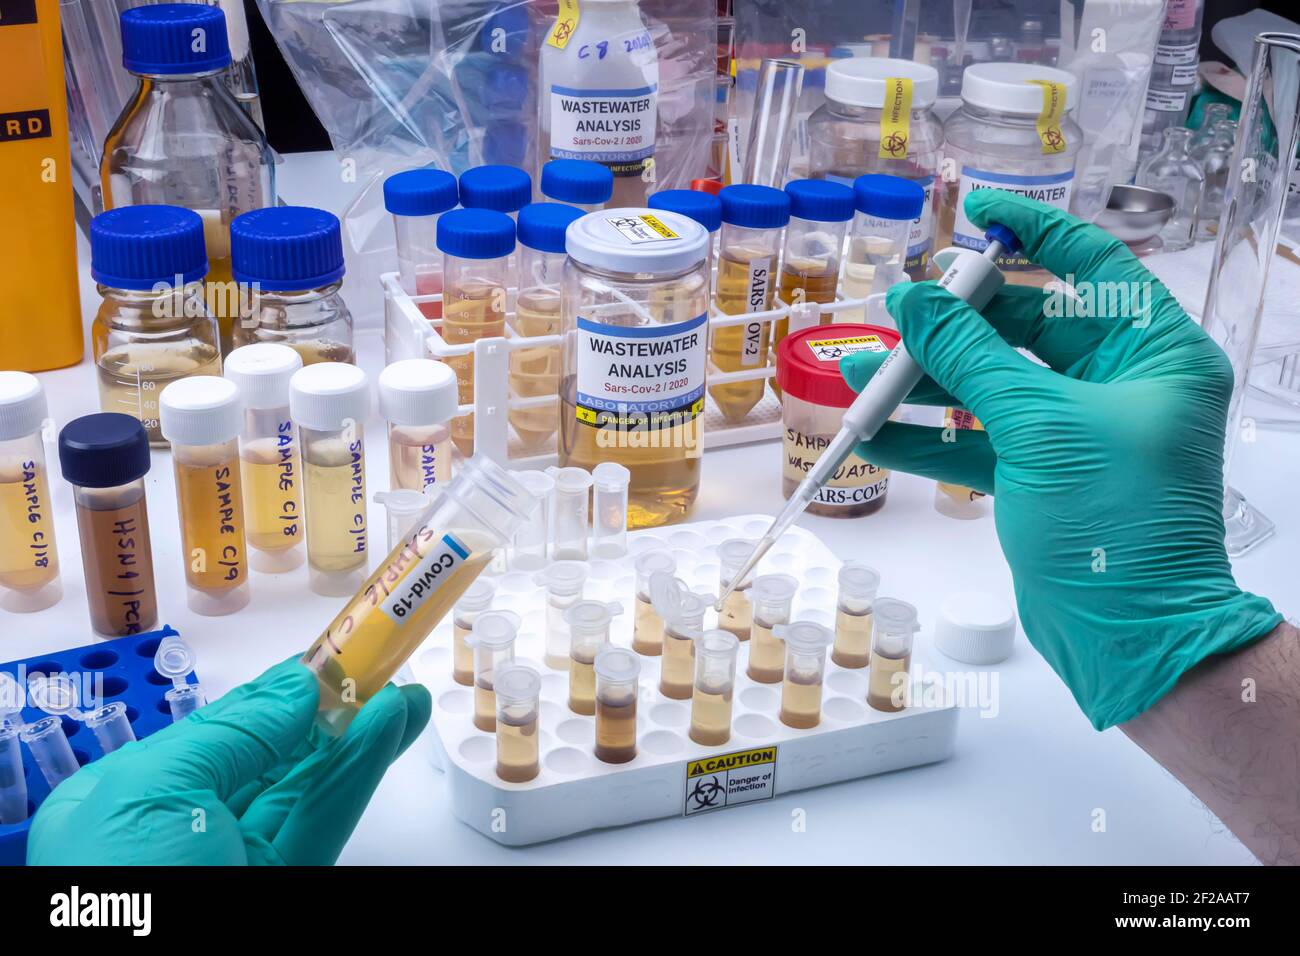 Analisi del virus sars-COV-2 nell'uomo in un laboratorio di acque reflue, immagine concettuale Foto Stock